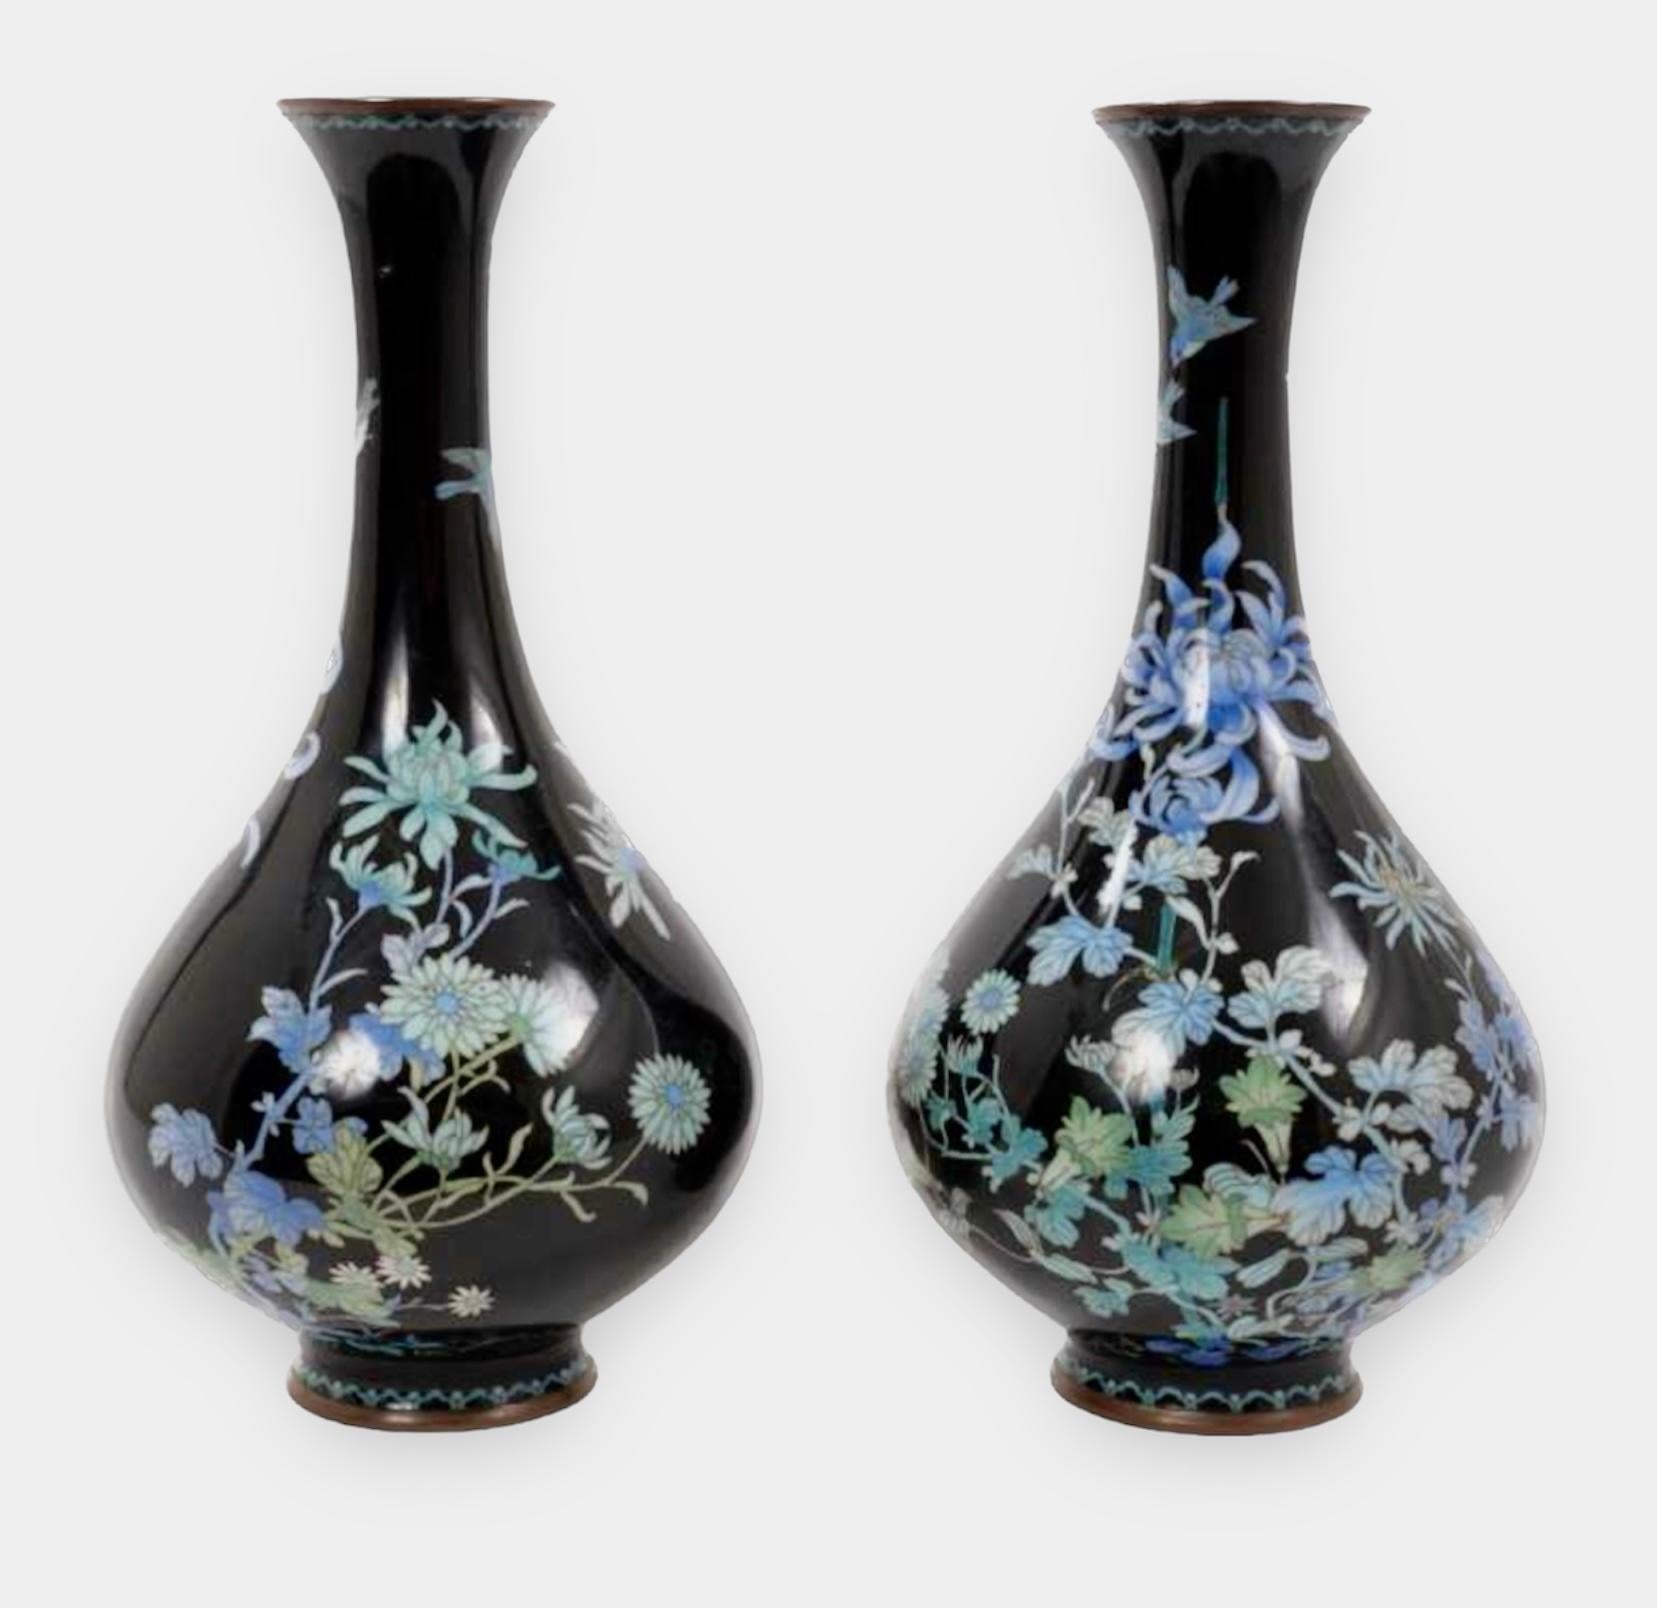 Magnifique paire de vases oviformes en émail cloisonné japonais 19e siècle 
Période Meiji 

Paire de vases oviformes en émail cloisonné japonais, travaillés avec du fil d'argent et décorés de chrysanthèmes bleu pâle et de feuillage sur un fond noir